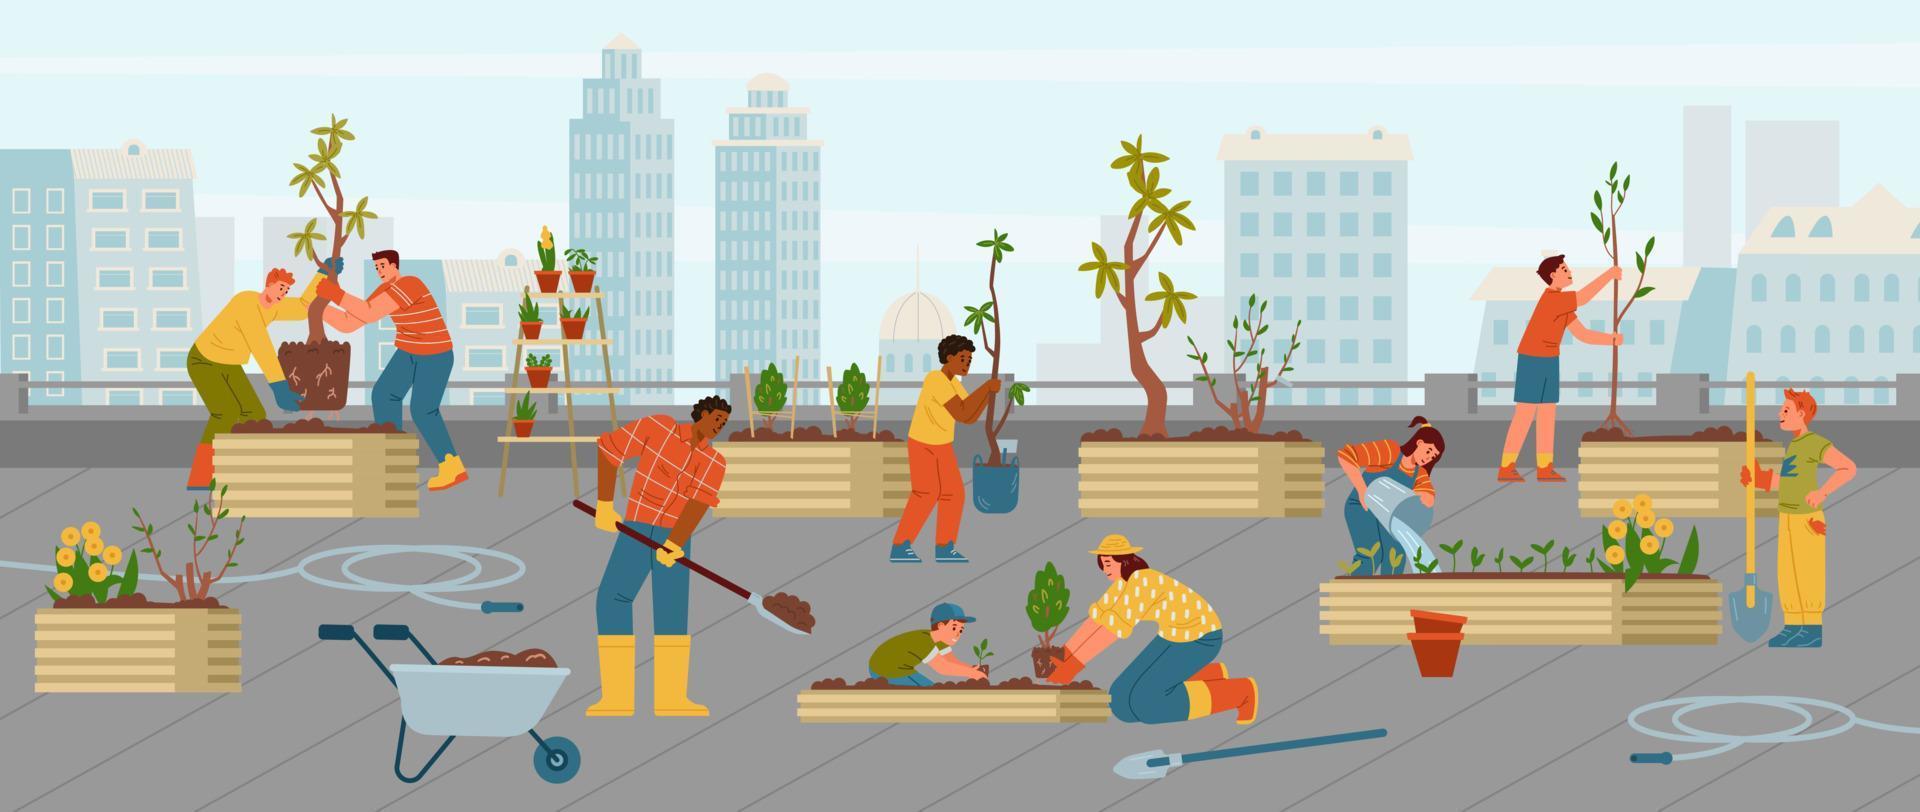 adultos y niños haciendo jardinería juntos en la ilustración vectorial de la azotea. jardín comunitario urbano. vector